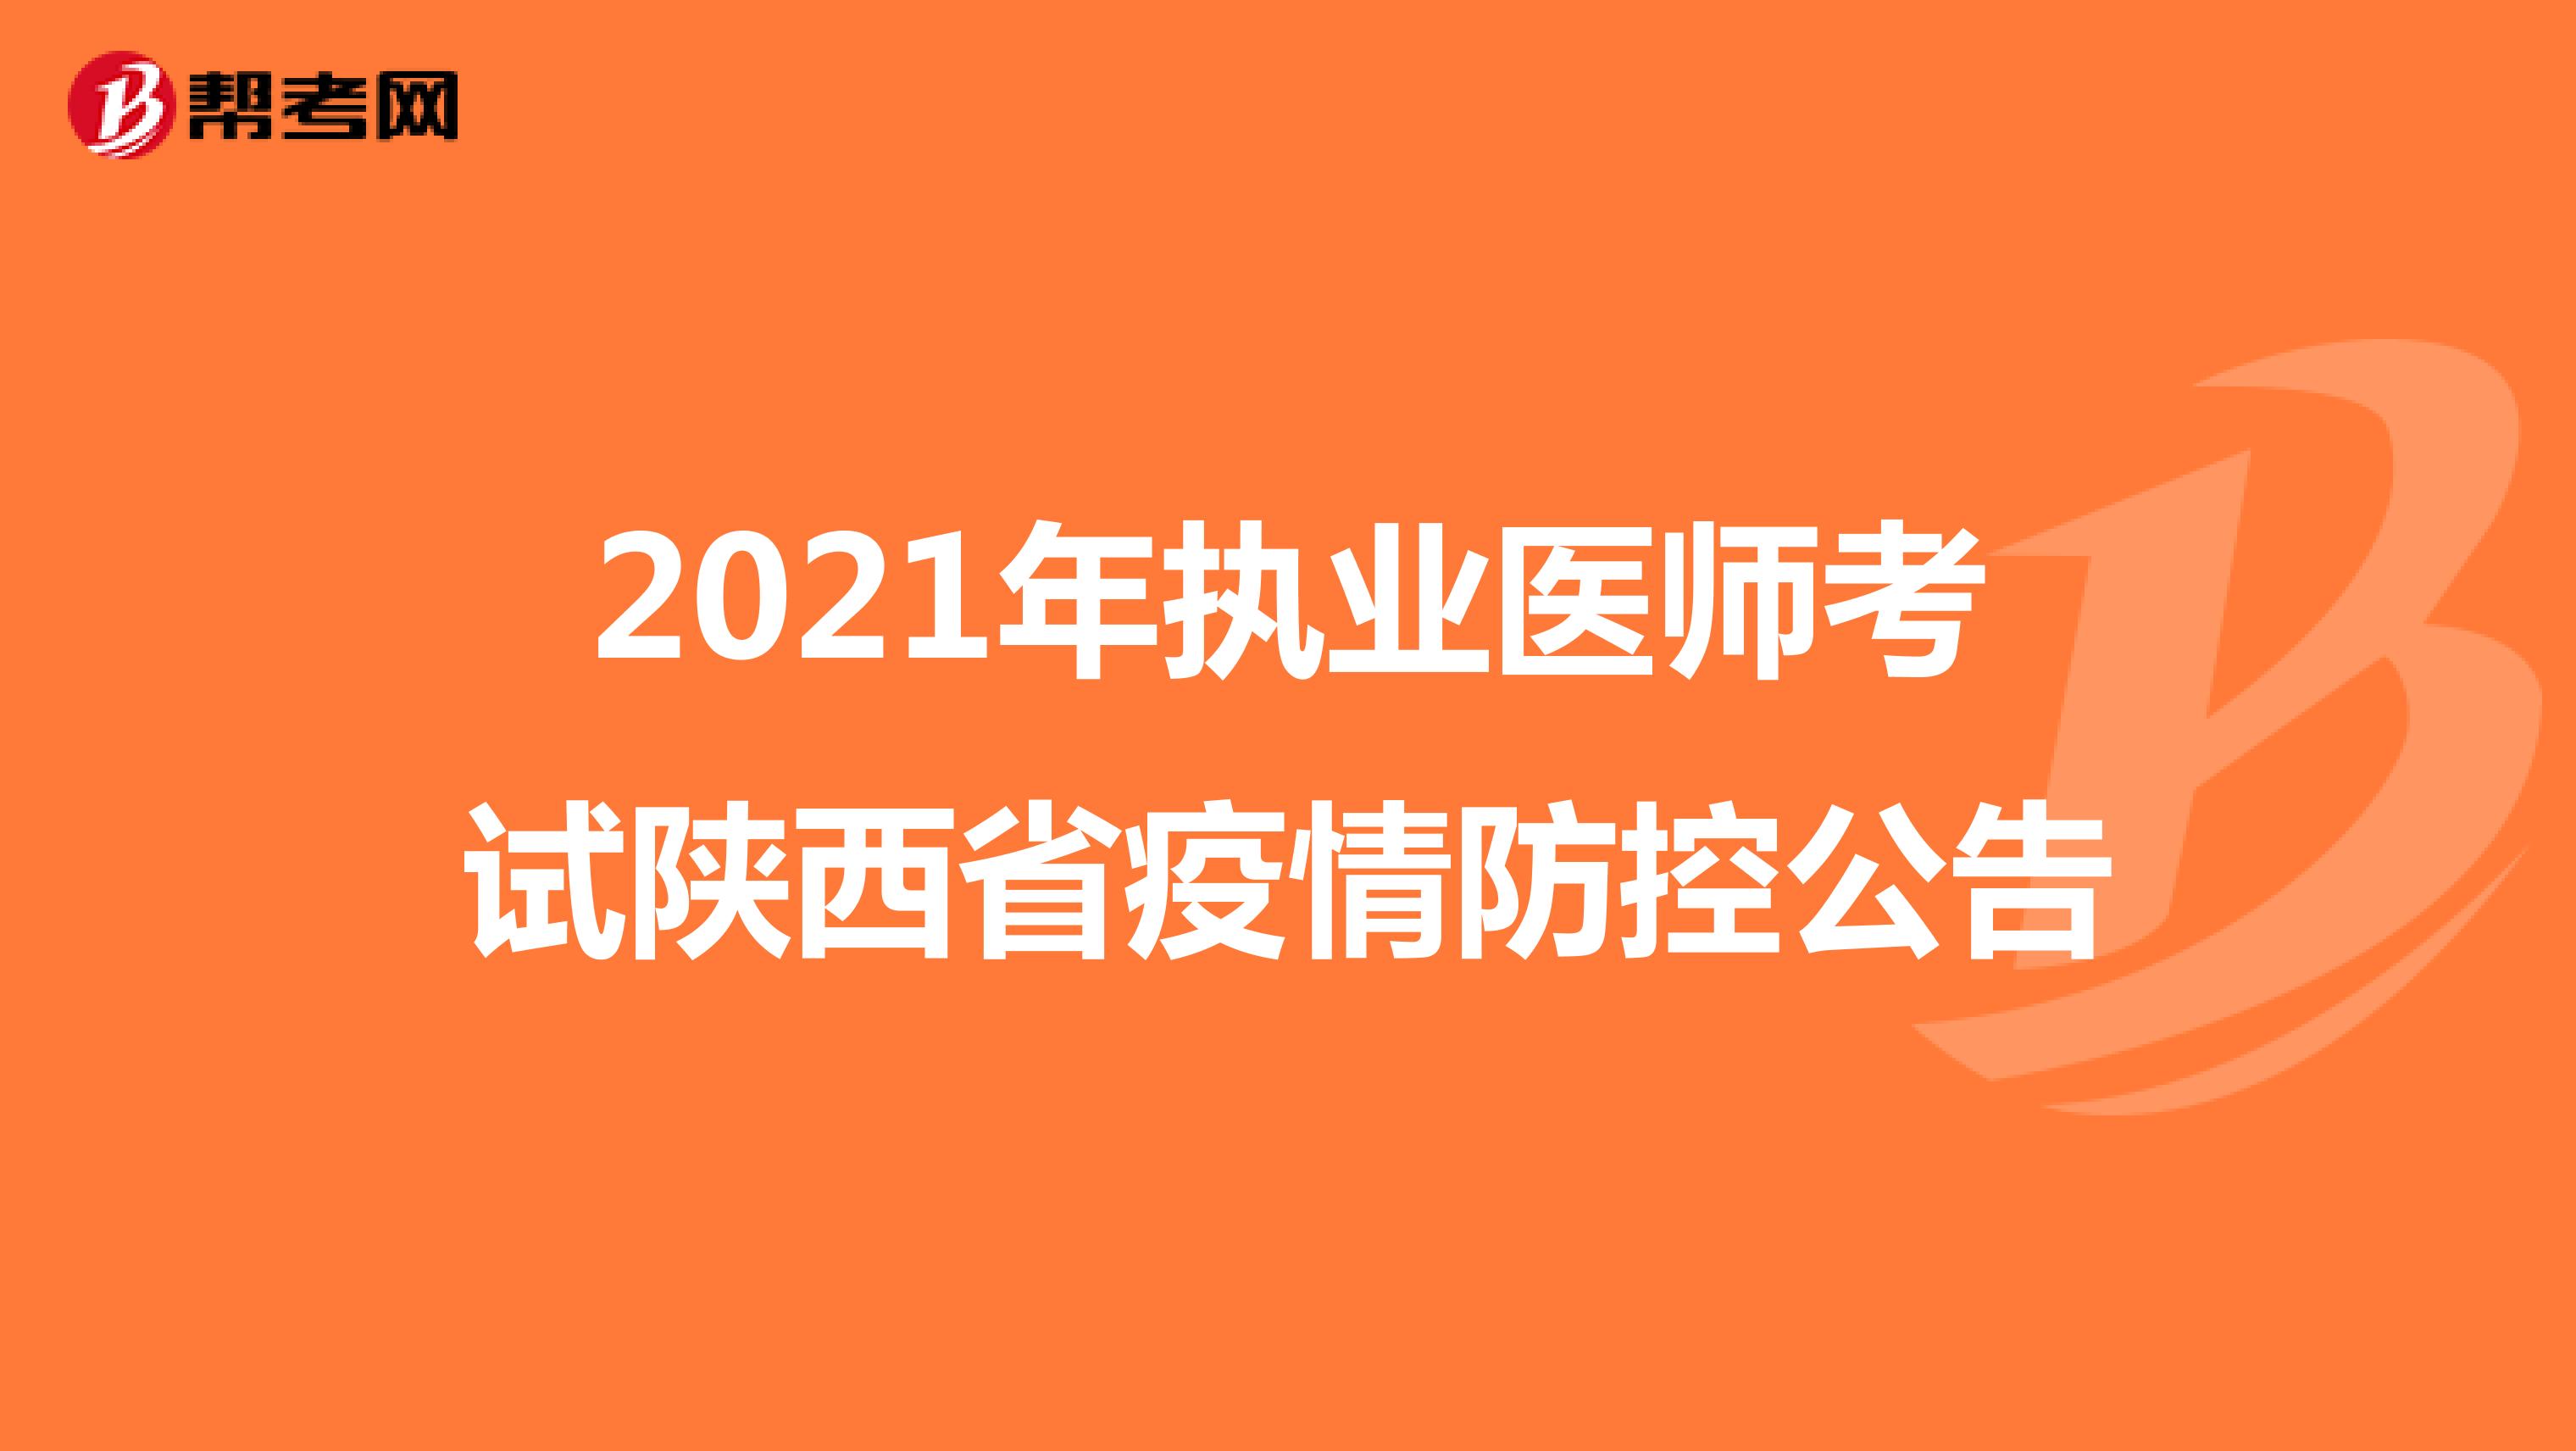 2021年执业医师考试陕西省疫情防控公告